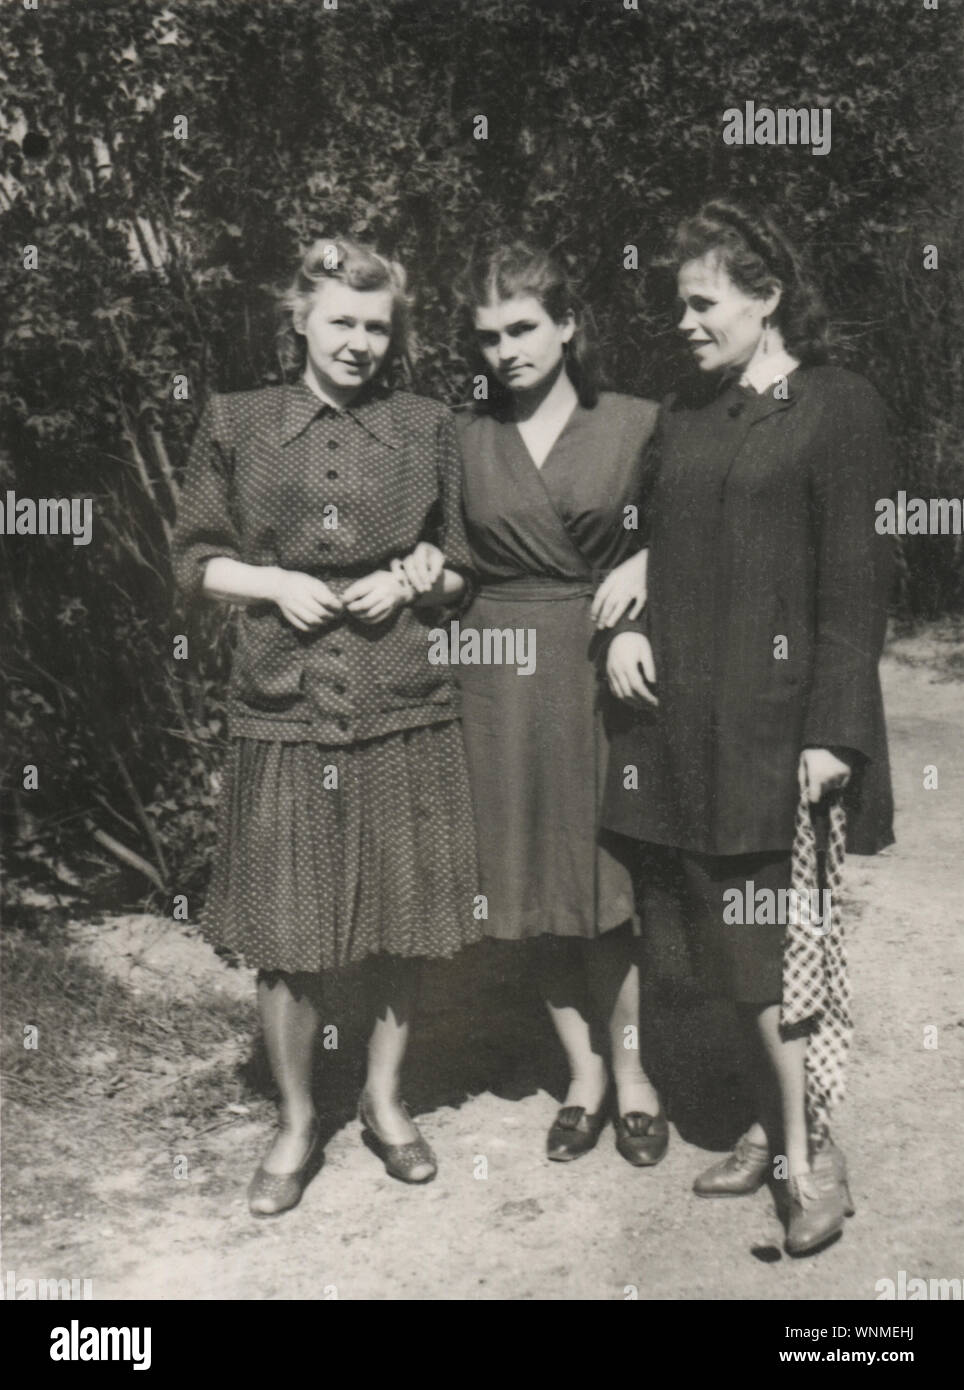 Fotografia d'epoca delle tre donne russe all'aperto in Germania, 1945-1947 Foto Stock